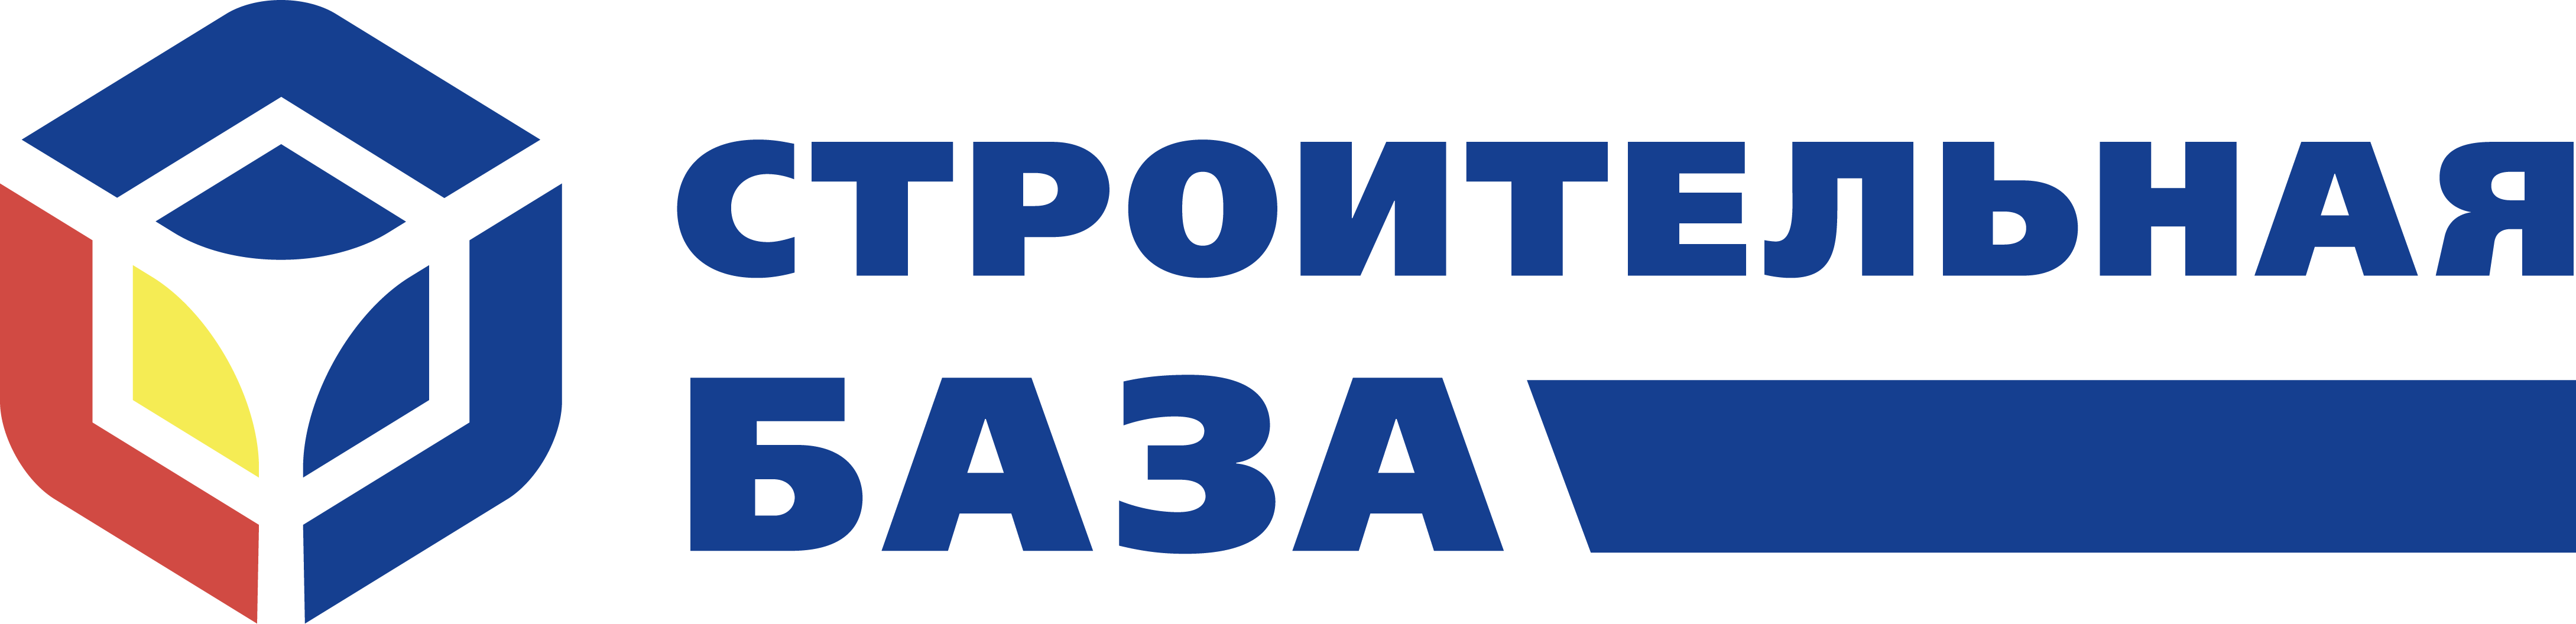 ООО «Стройбаза» - Город Ижевск logo (3).png